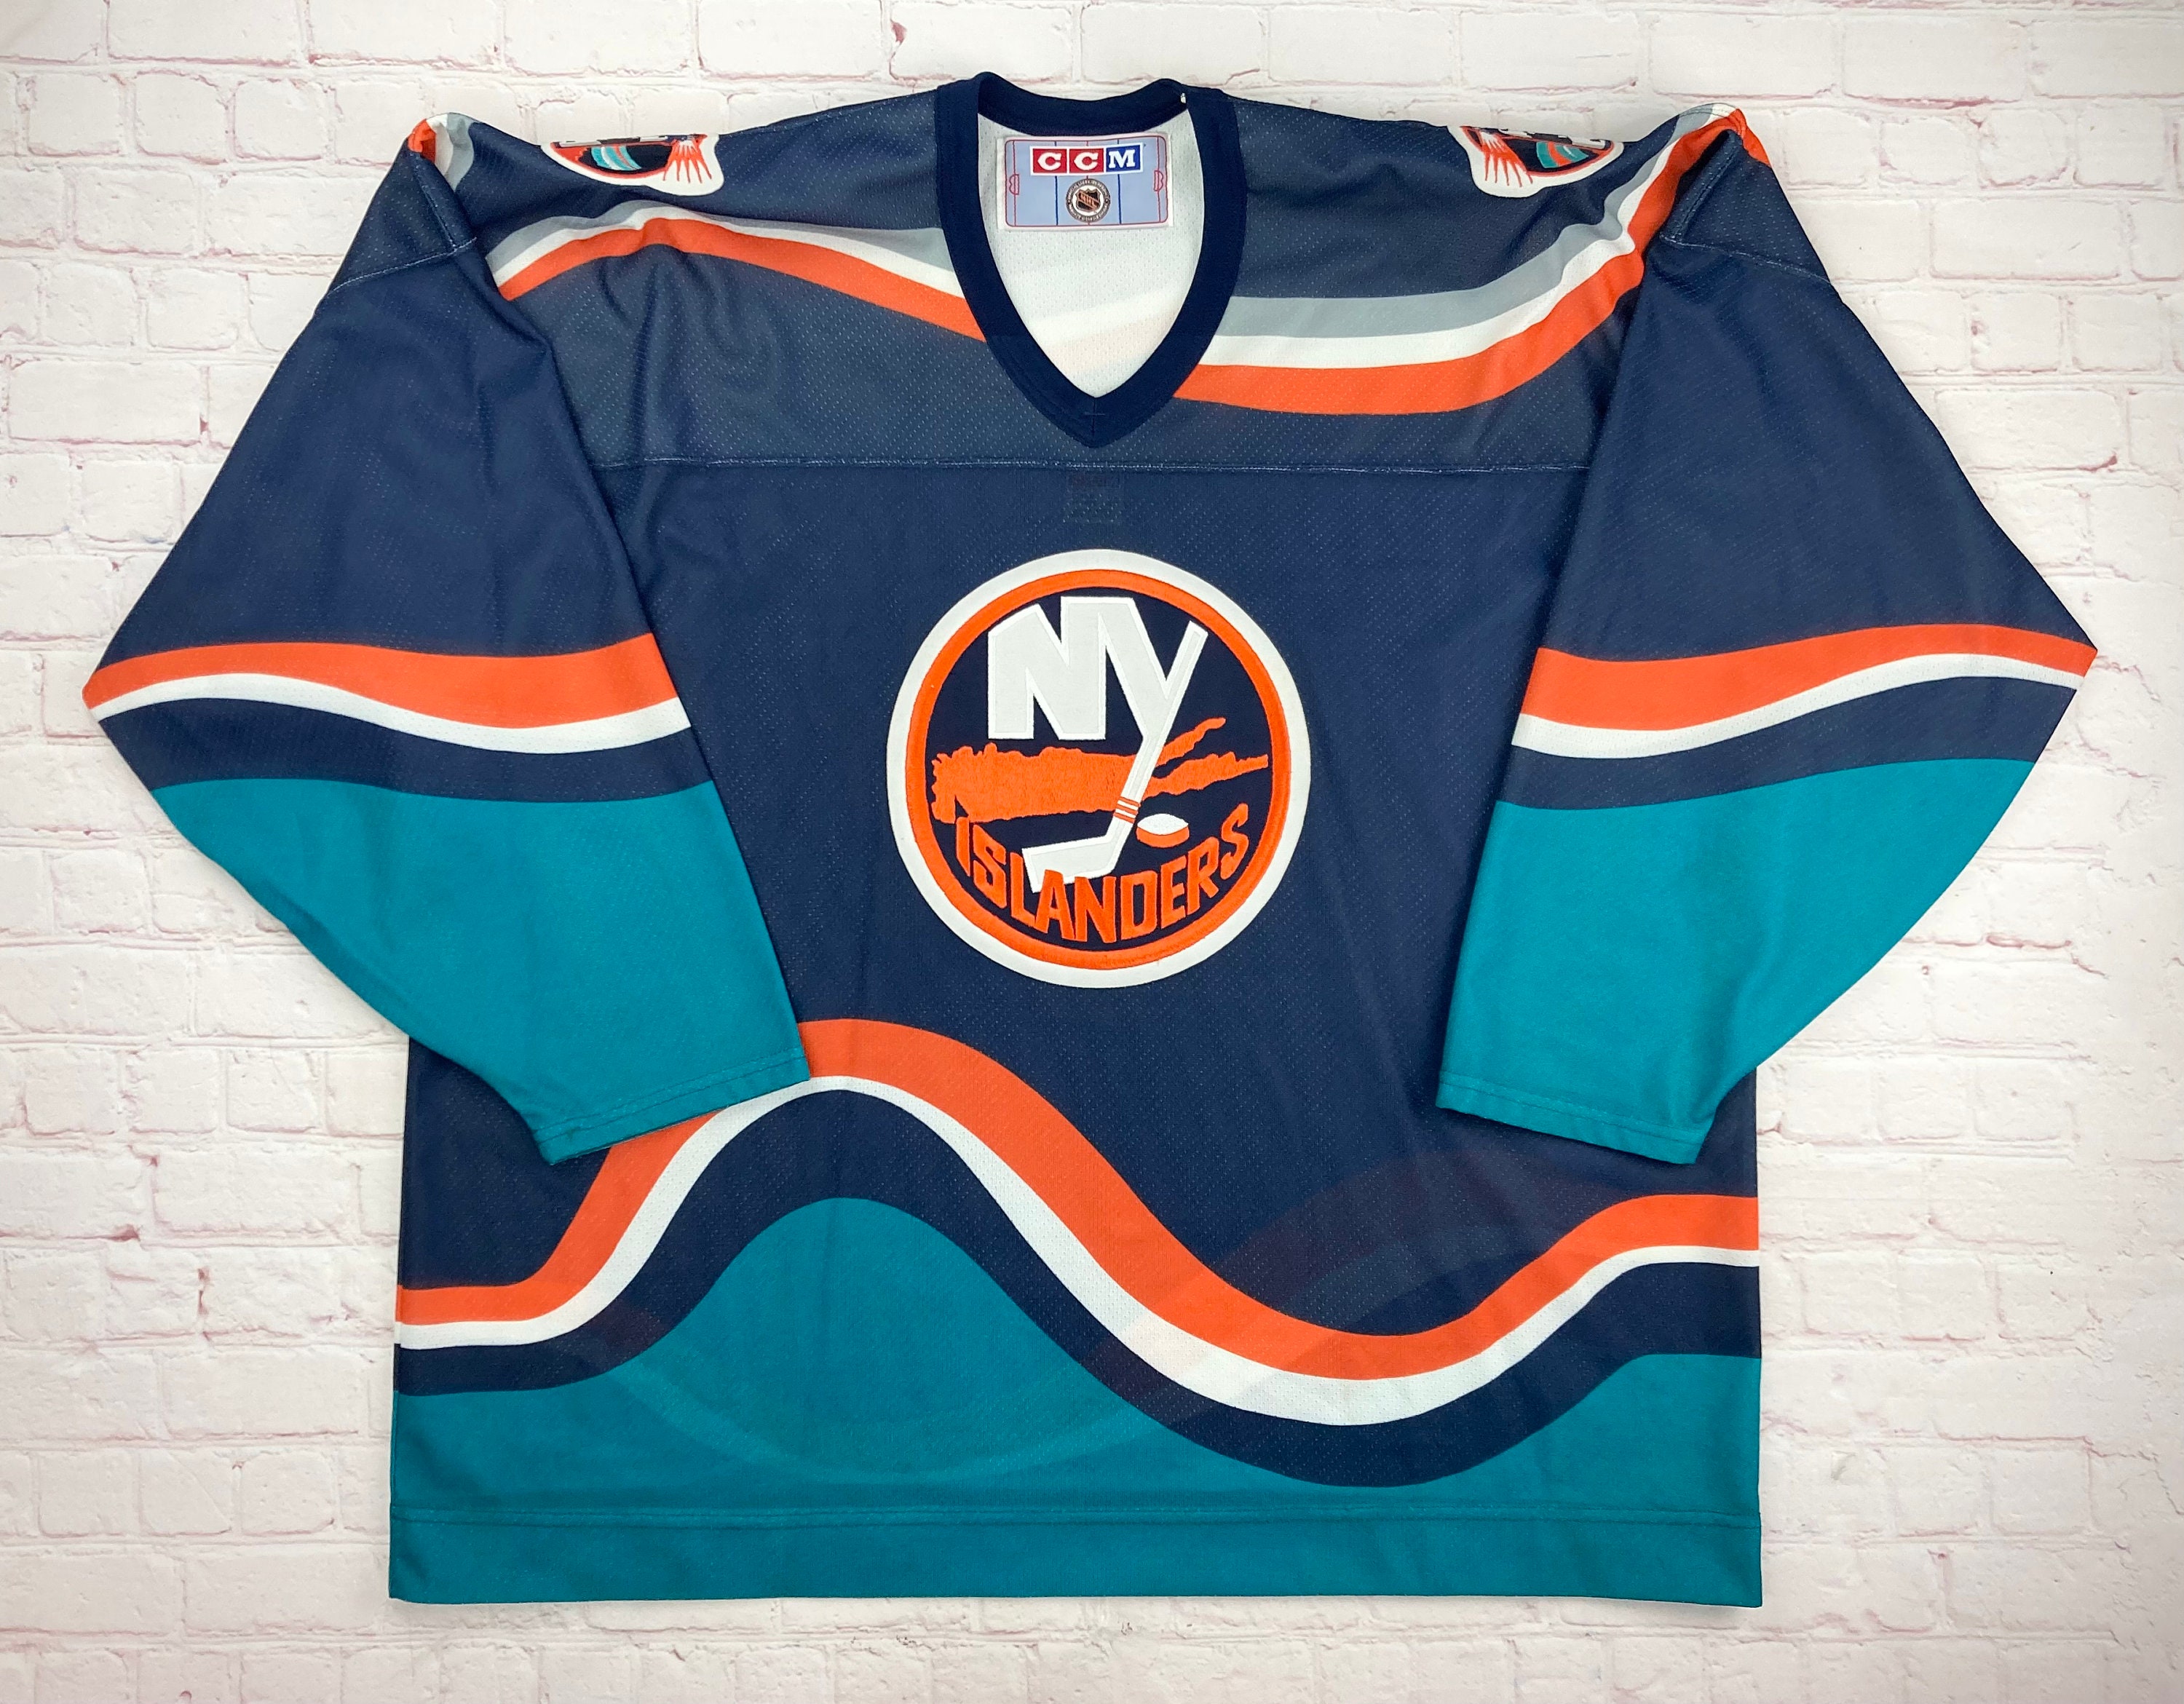 Mike Bossy New York Islanders Signed CCM NHL Jersey JSA Certified